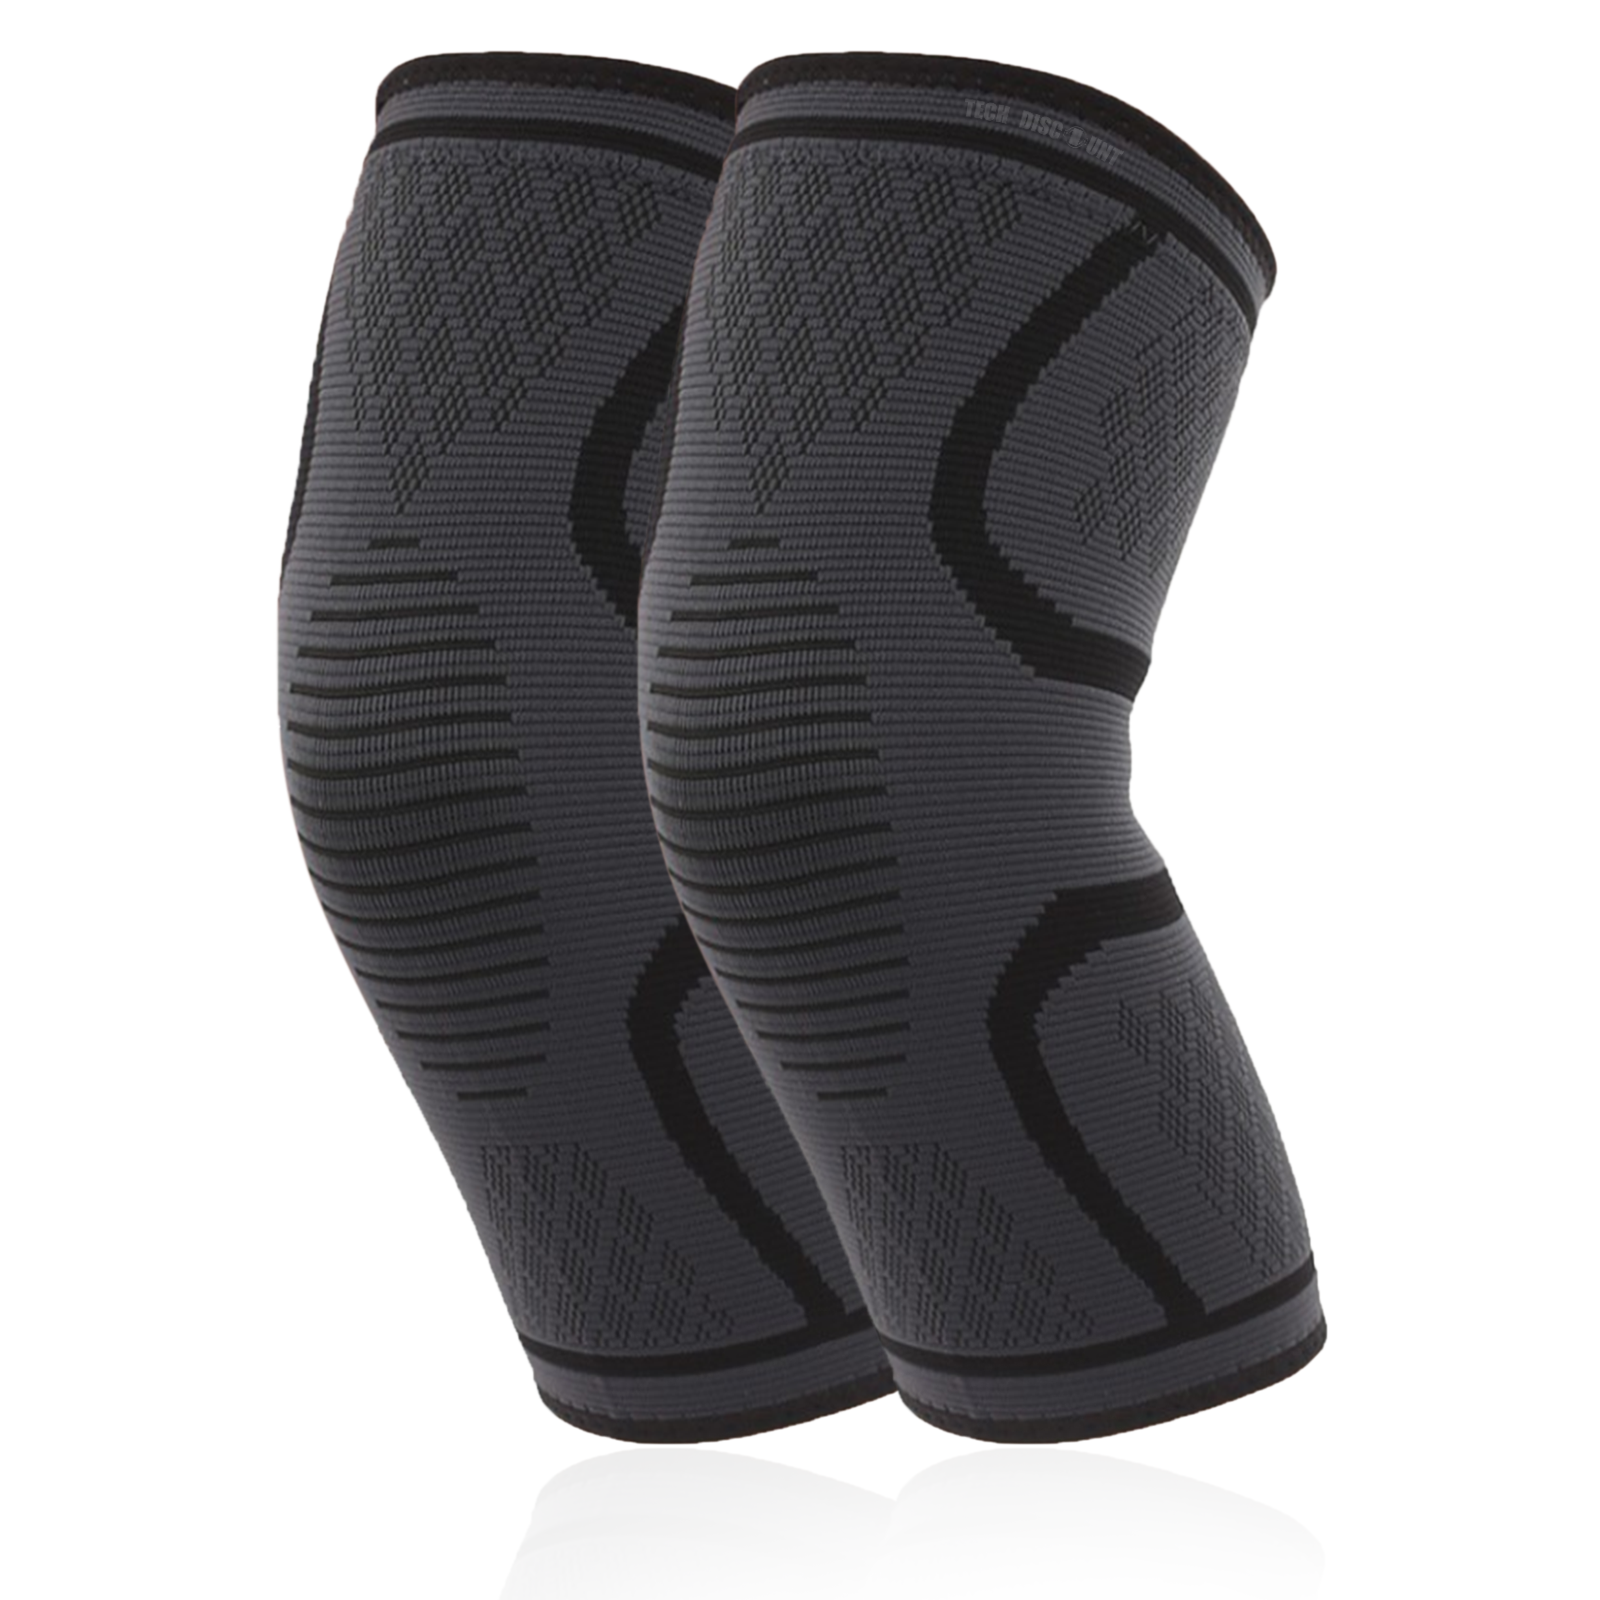 TD Genouillère de Compression/Bandage soutien de genou pour Sport/ Cross-fit, Basketball, Genouillère ligamentaire/Multifonction